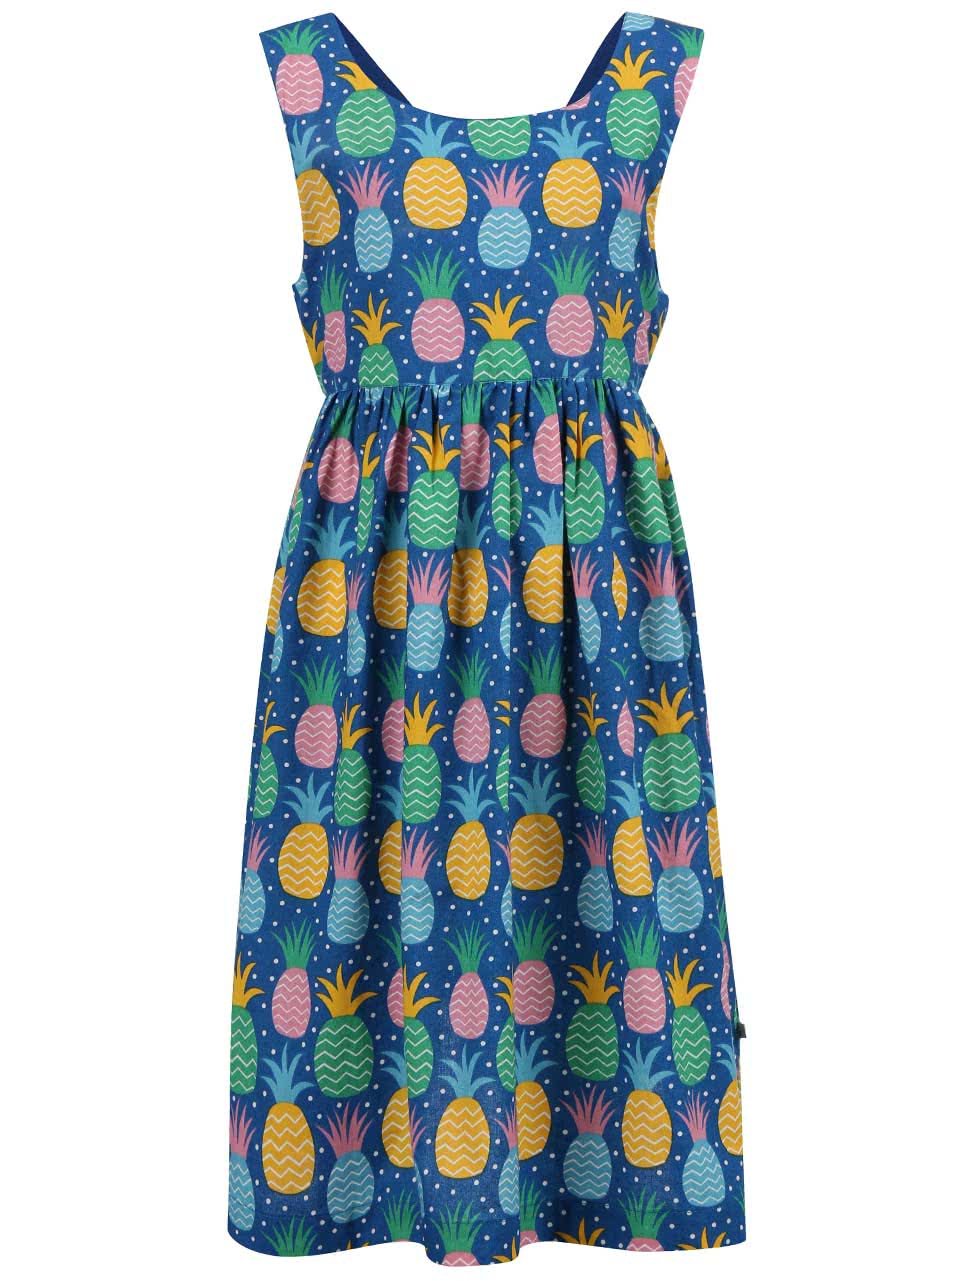 Modré dívčí šaty s ananasy Frugi Porthcurno